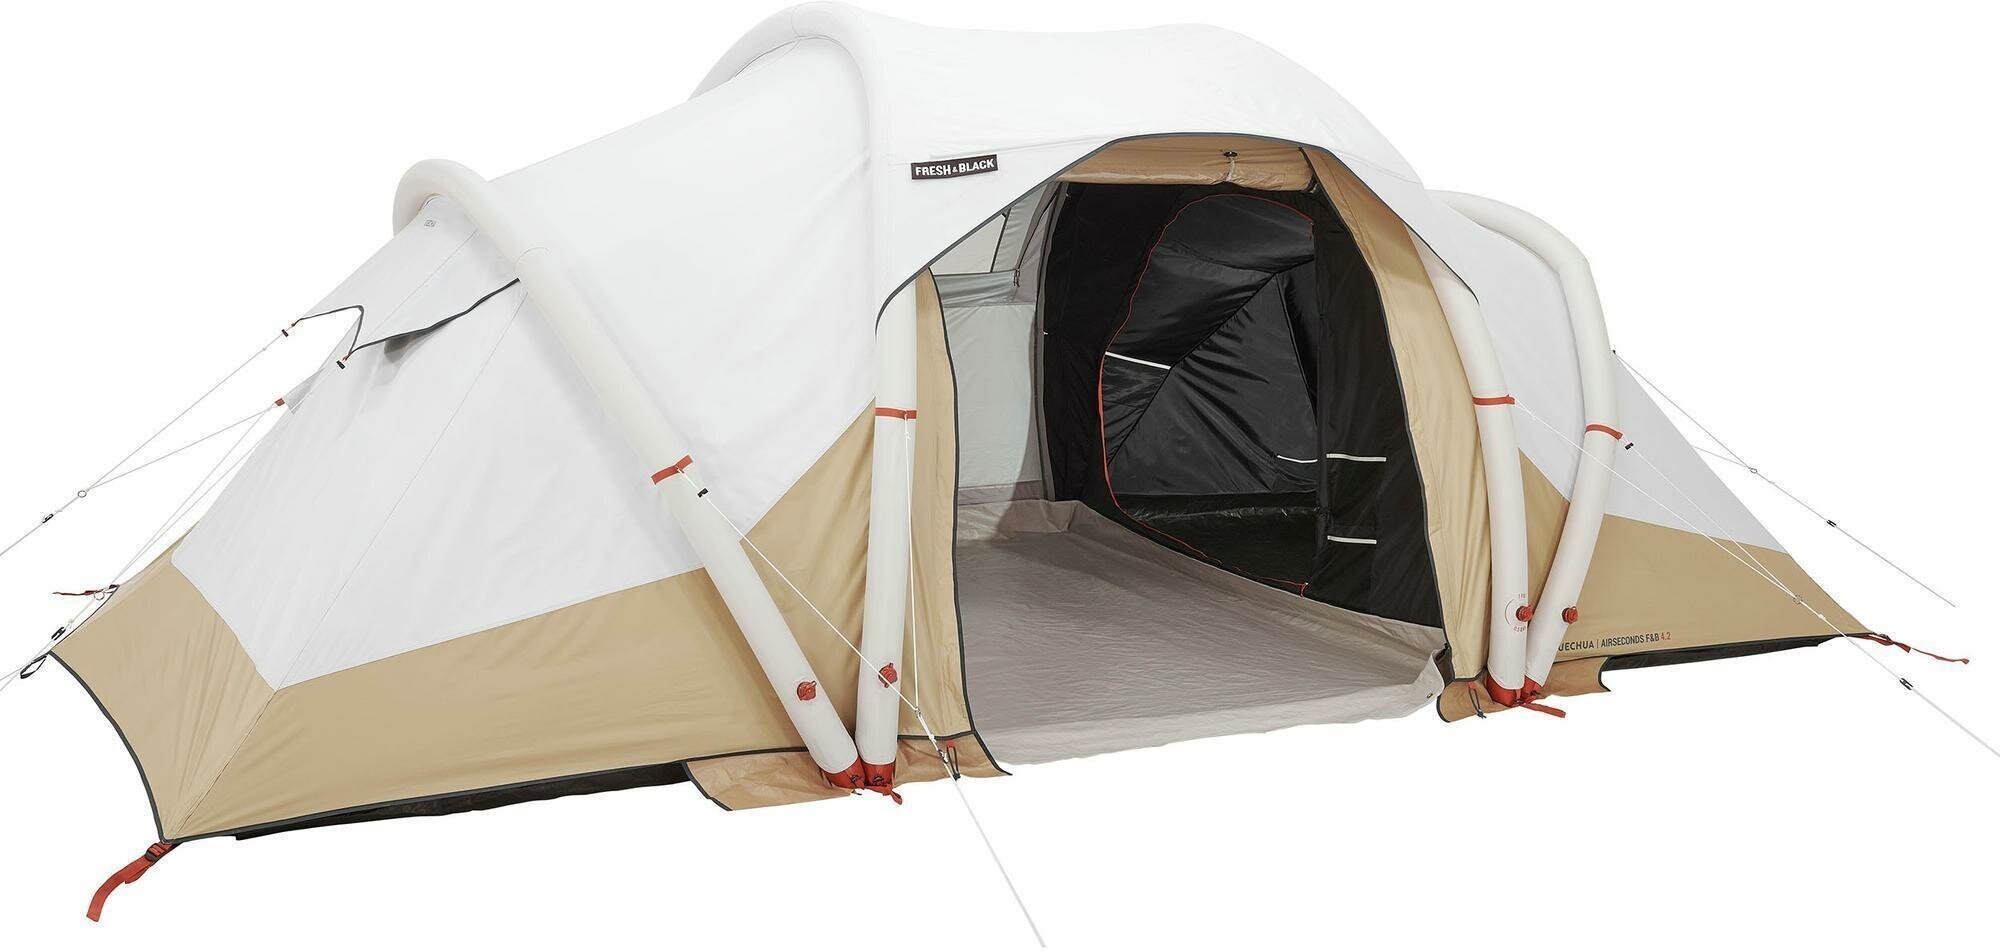 Надувная палатка Decathlon Quechua Air Seconds 4.2 F&B 4-местный, 2 спальни